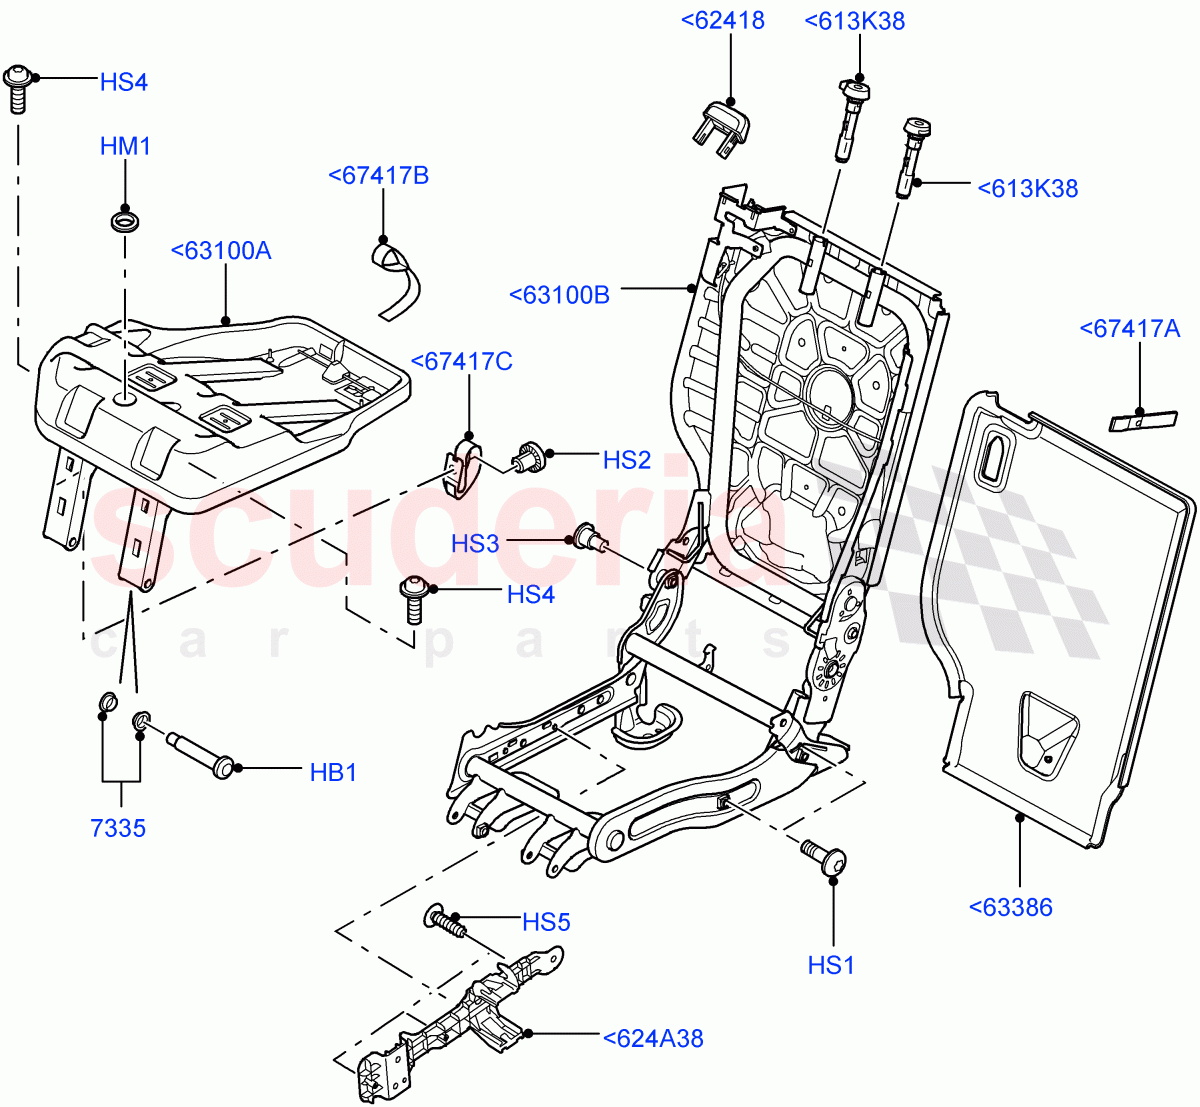 Rear Seat Frame((V)FROMAA000001) of Land Rover Land Rover Range Rover Sport (2010-2013) [3.6 V8 32V DOHC EFI Diesel]